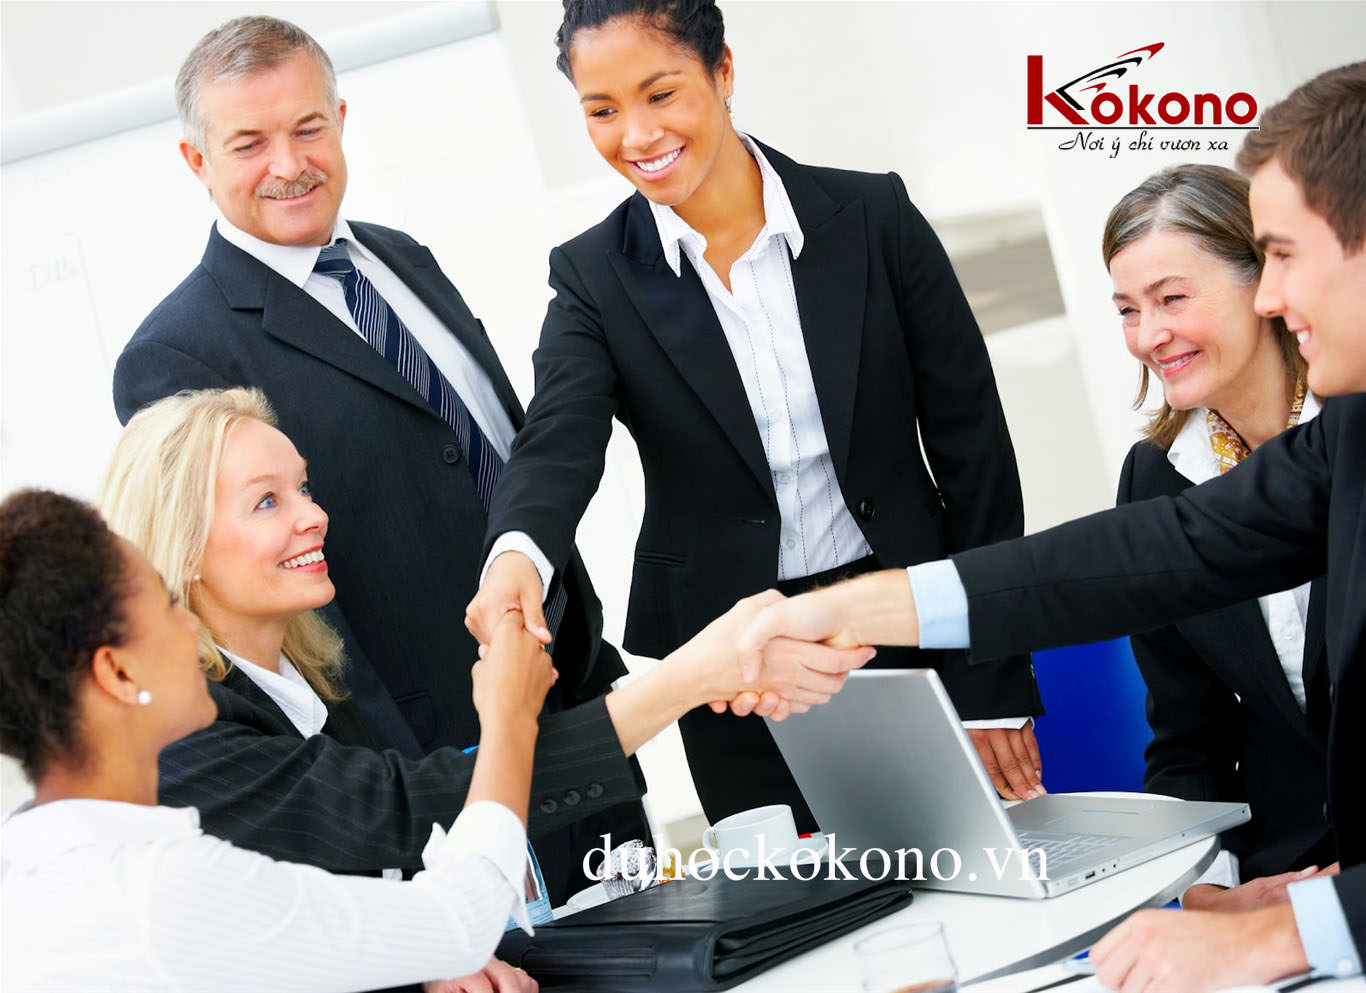 Đội ngũ nhân sự Công ty Cổ phần Tư vấn du học Kokono